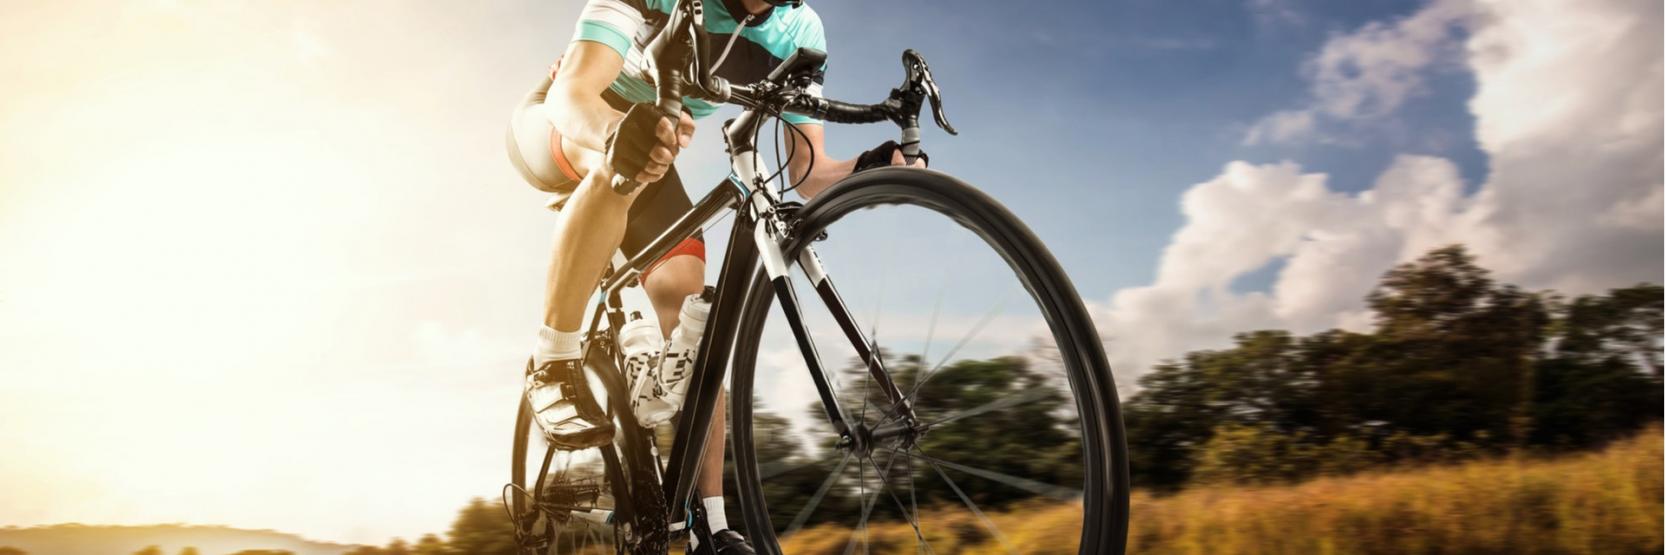 أبرز فوائد رياضة الدراجة الهوائية على الصحة